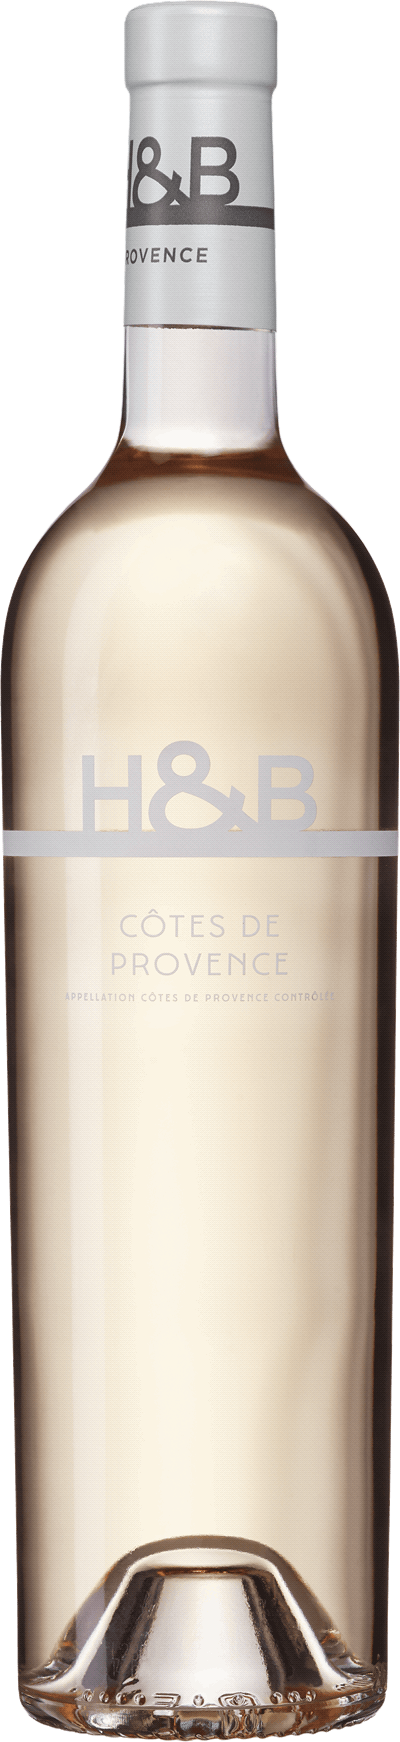 Hecht & Bannier Côtes de Provence Rosé